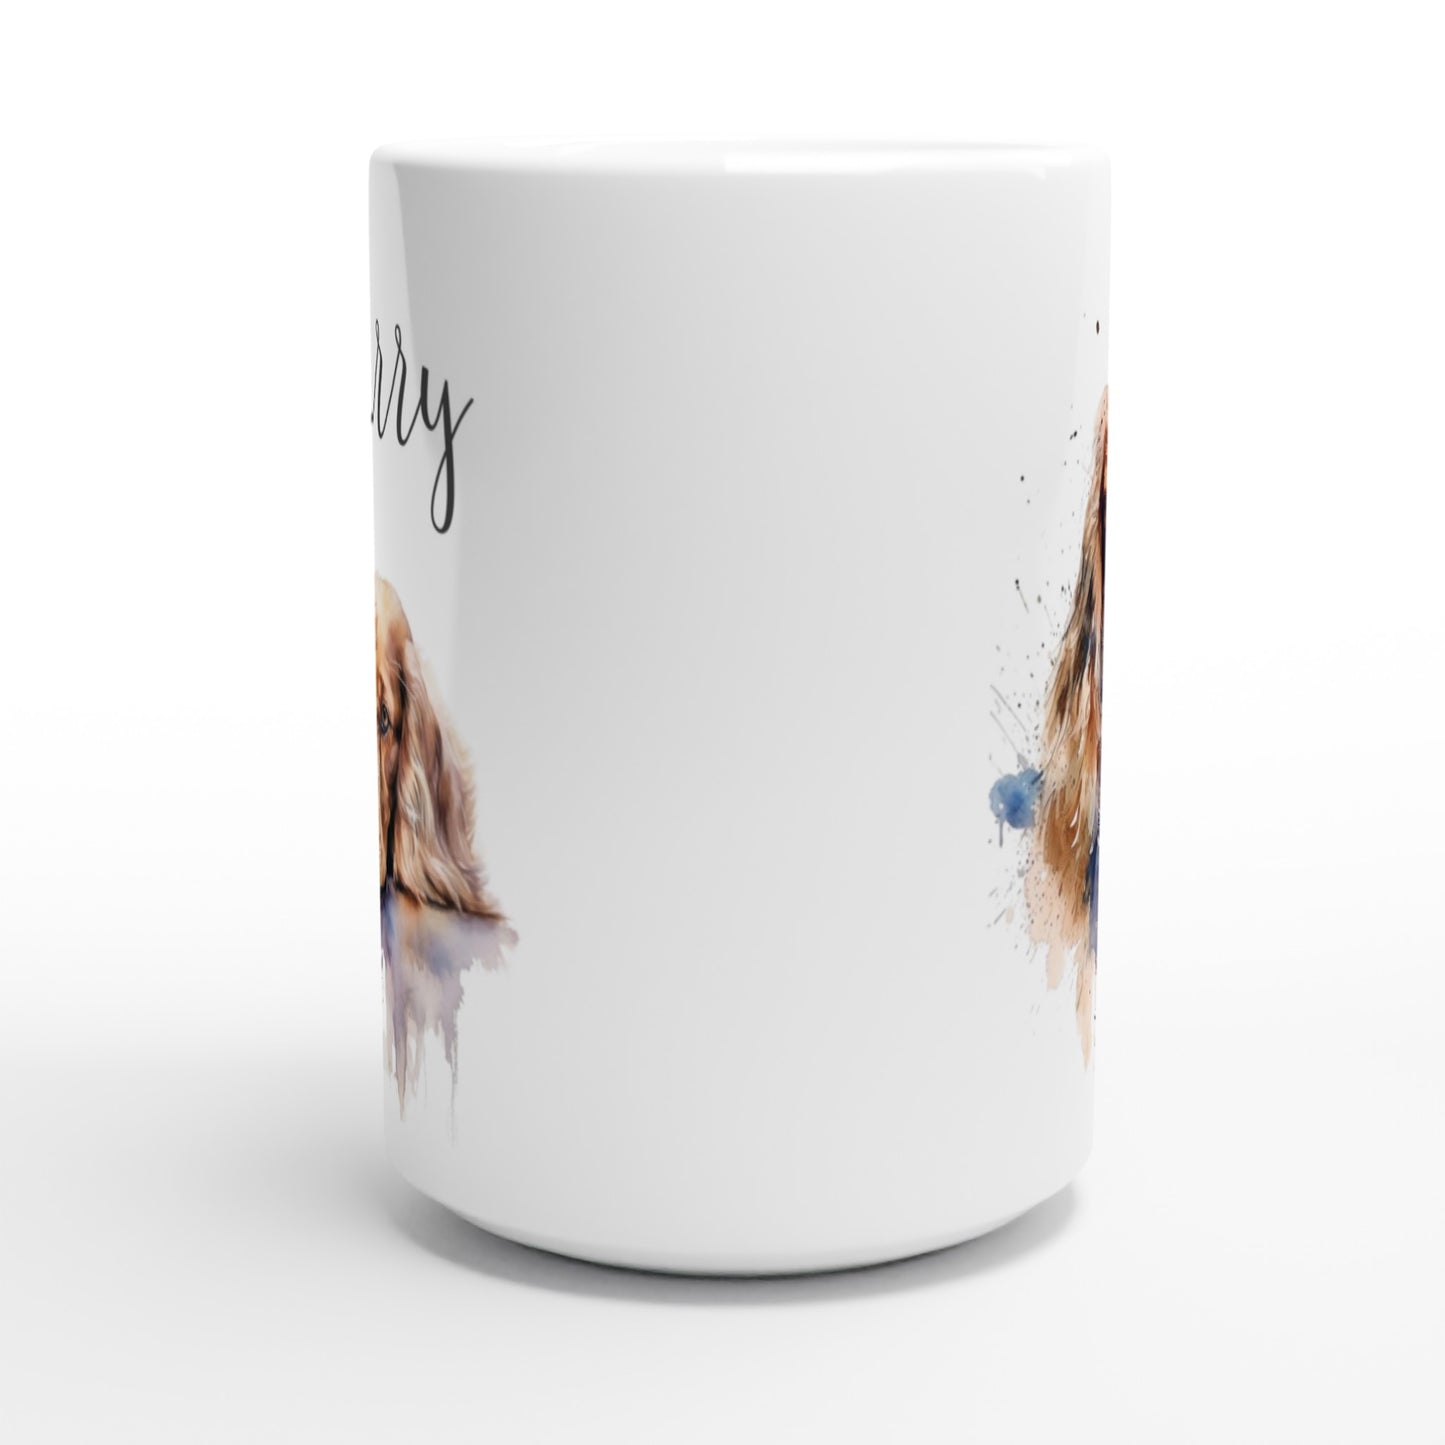 Personalised cocker spaniel mug